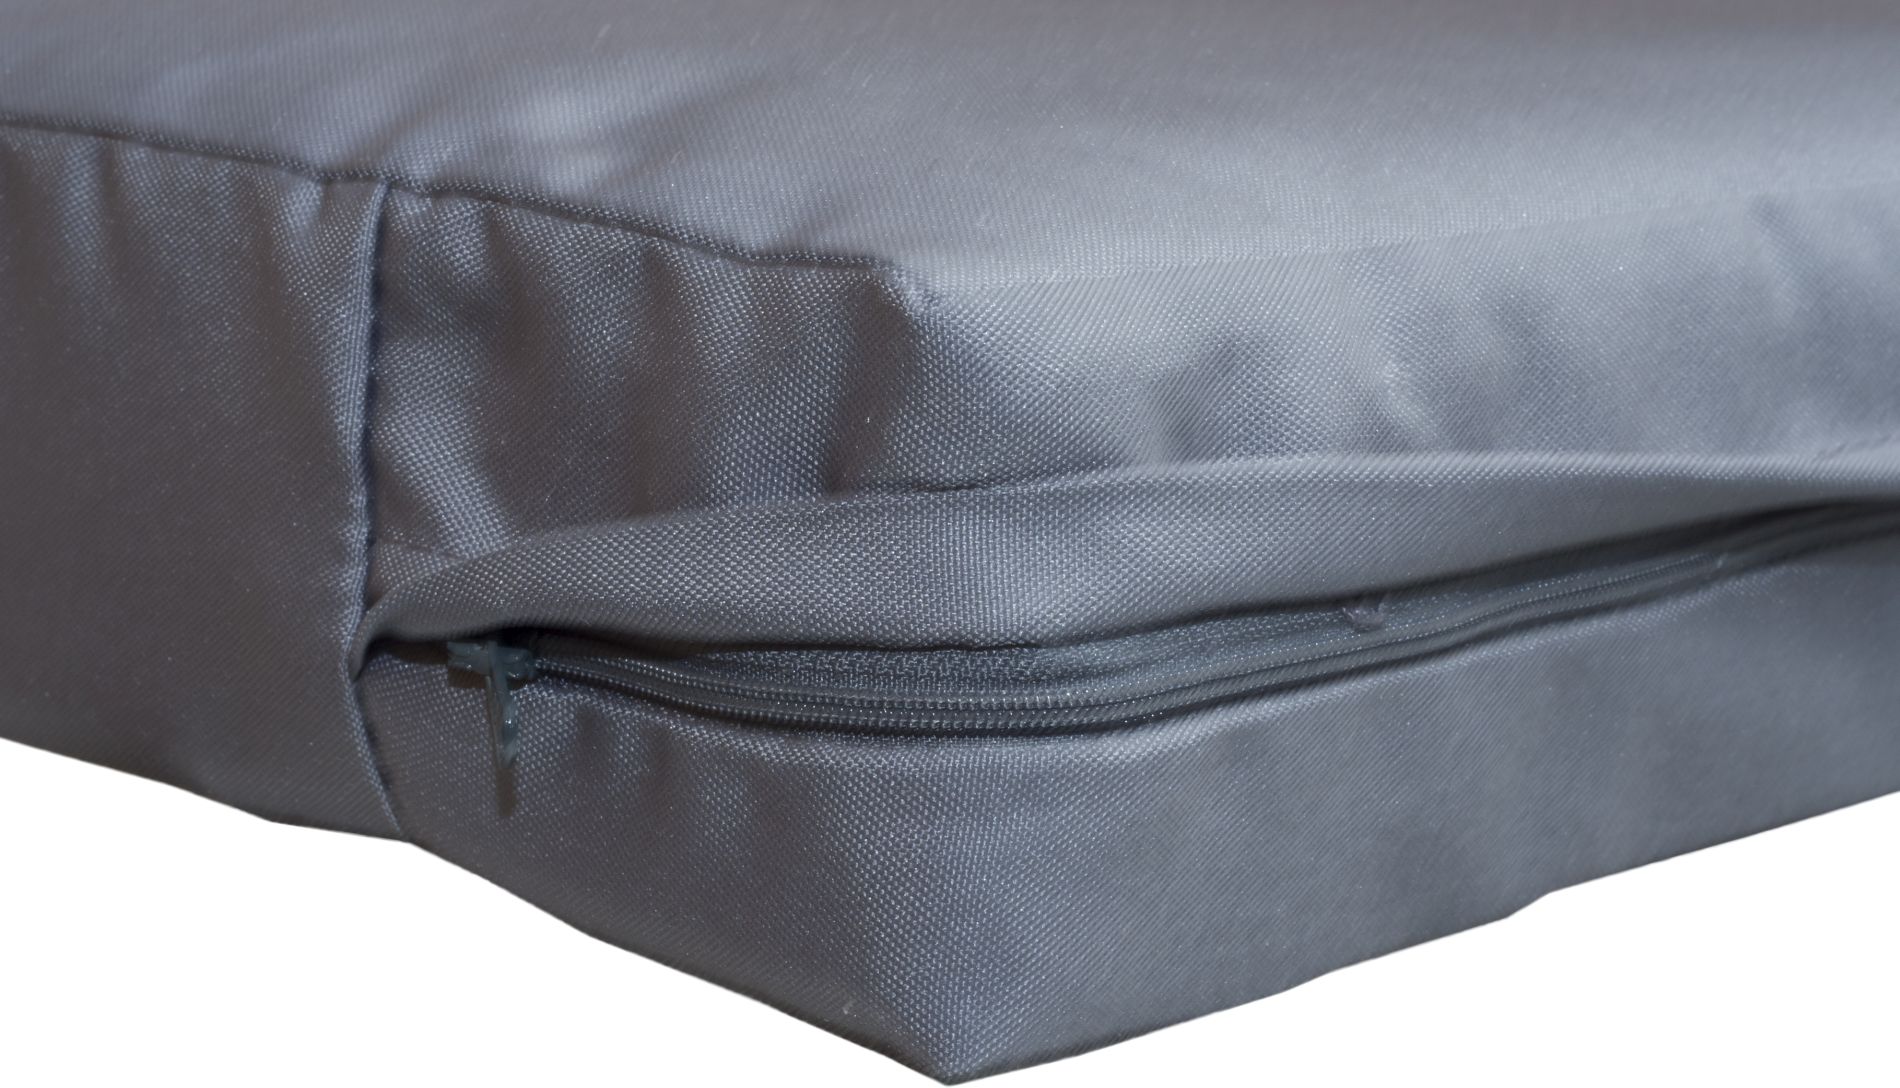 Sitzauflagen 100% Polyester für Palettensofas oder Loungegruppen in anthrazit ca. 70 x 70 cm